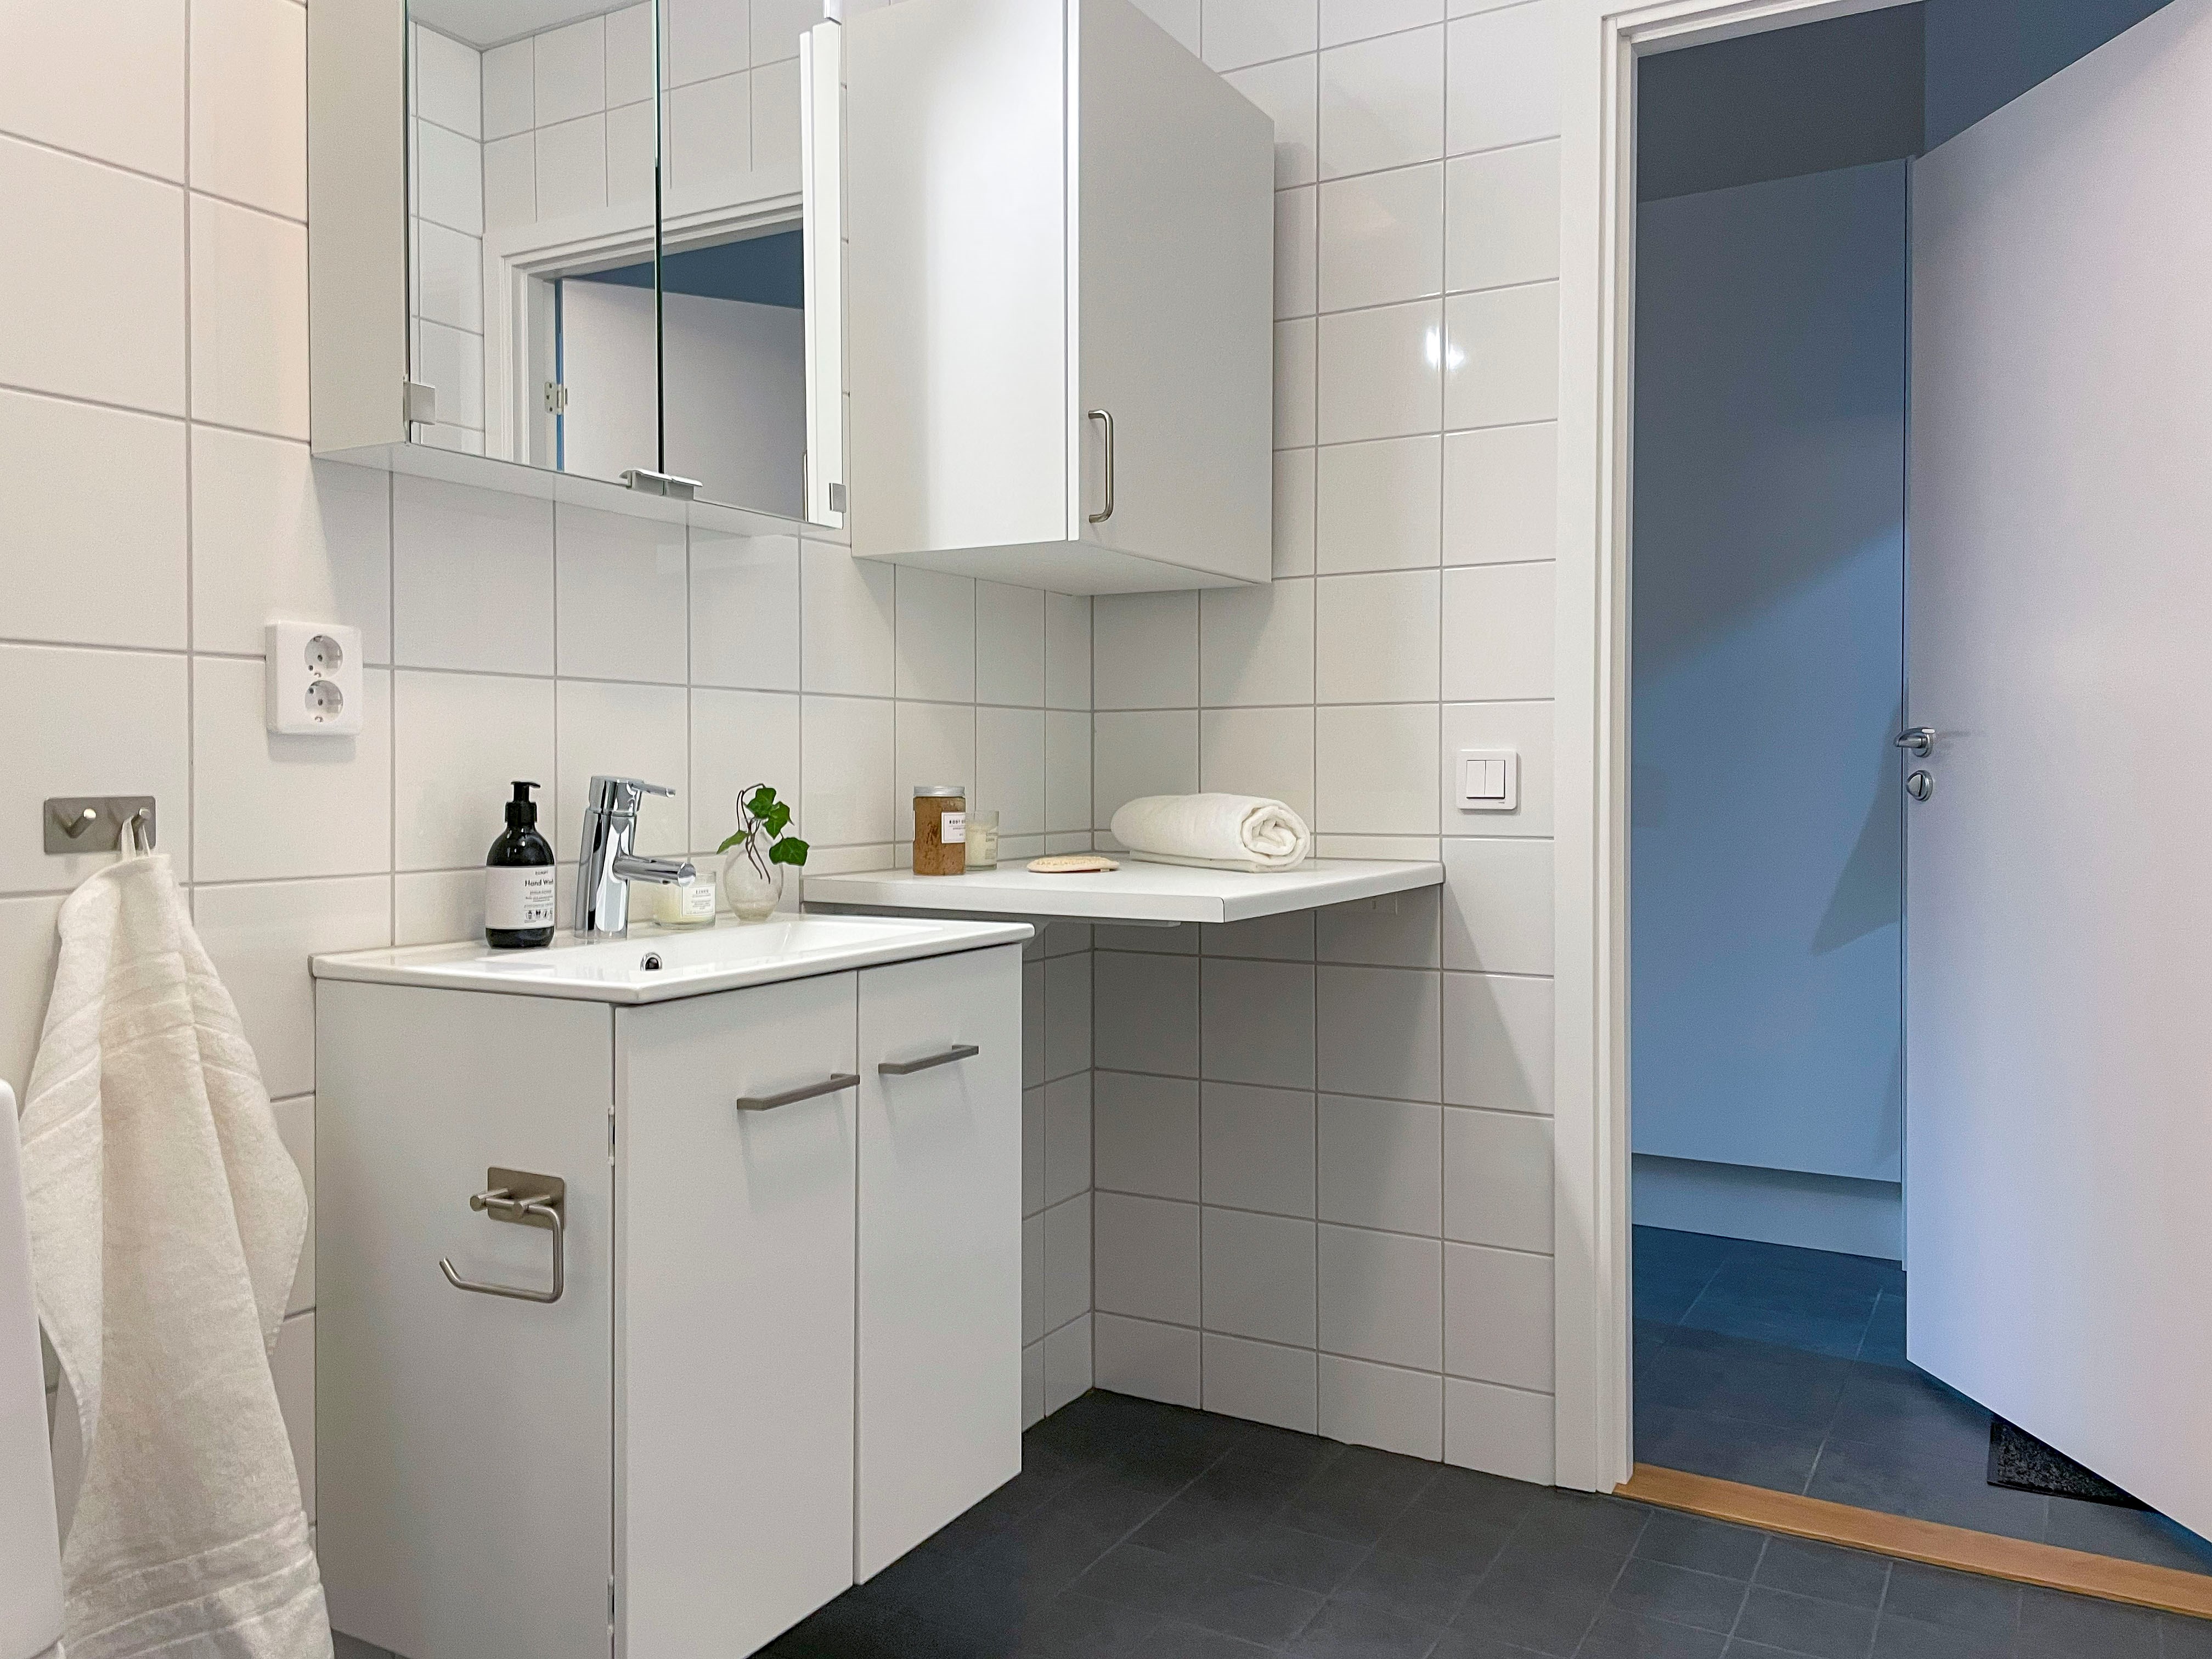 Bild från badrum, visar handfat, badrumsskåp och toaletten